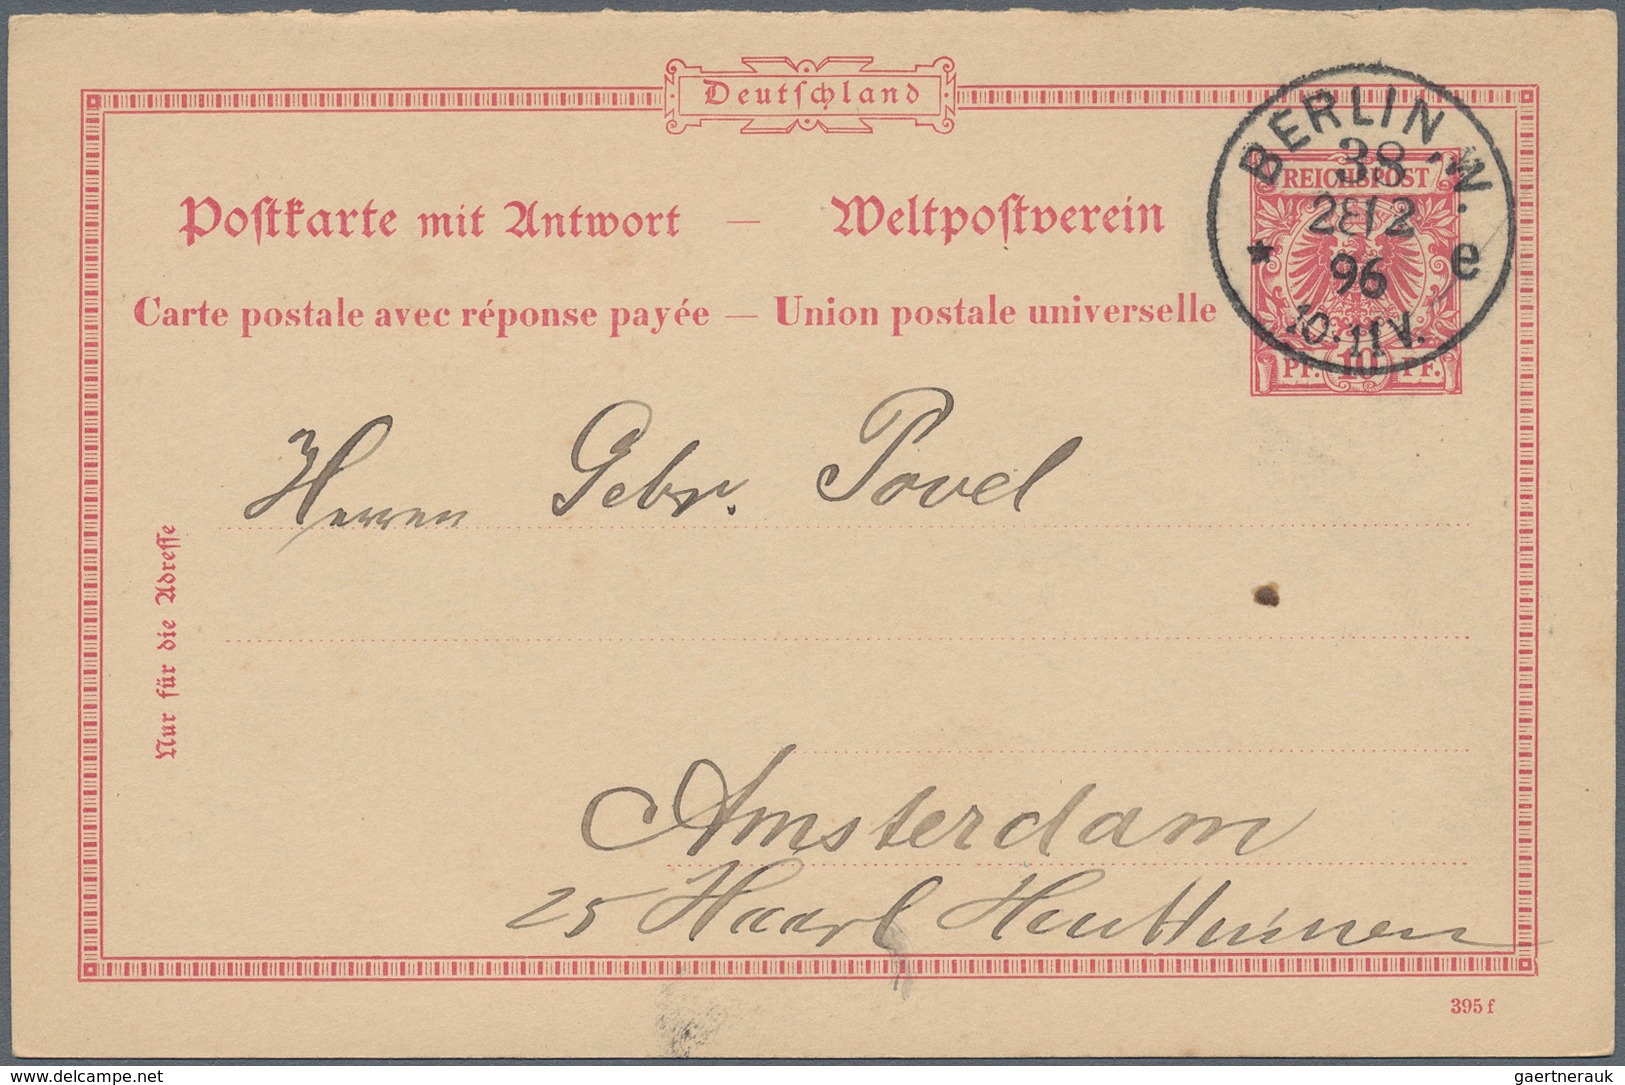 Deutsches Reich - Ganzsachen: 1872/1920, vielseitige Partie von ca. 520 bedarfsgebrauchten Ganzsache